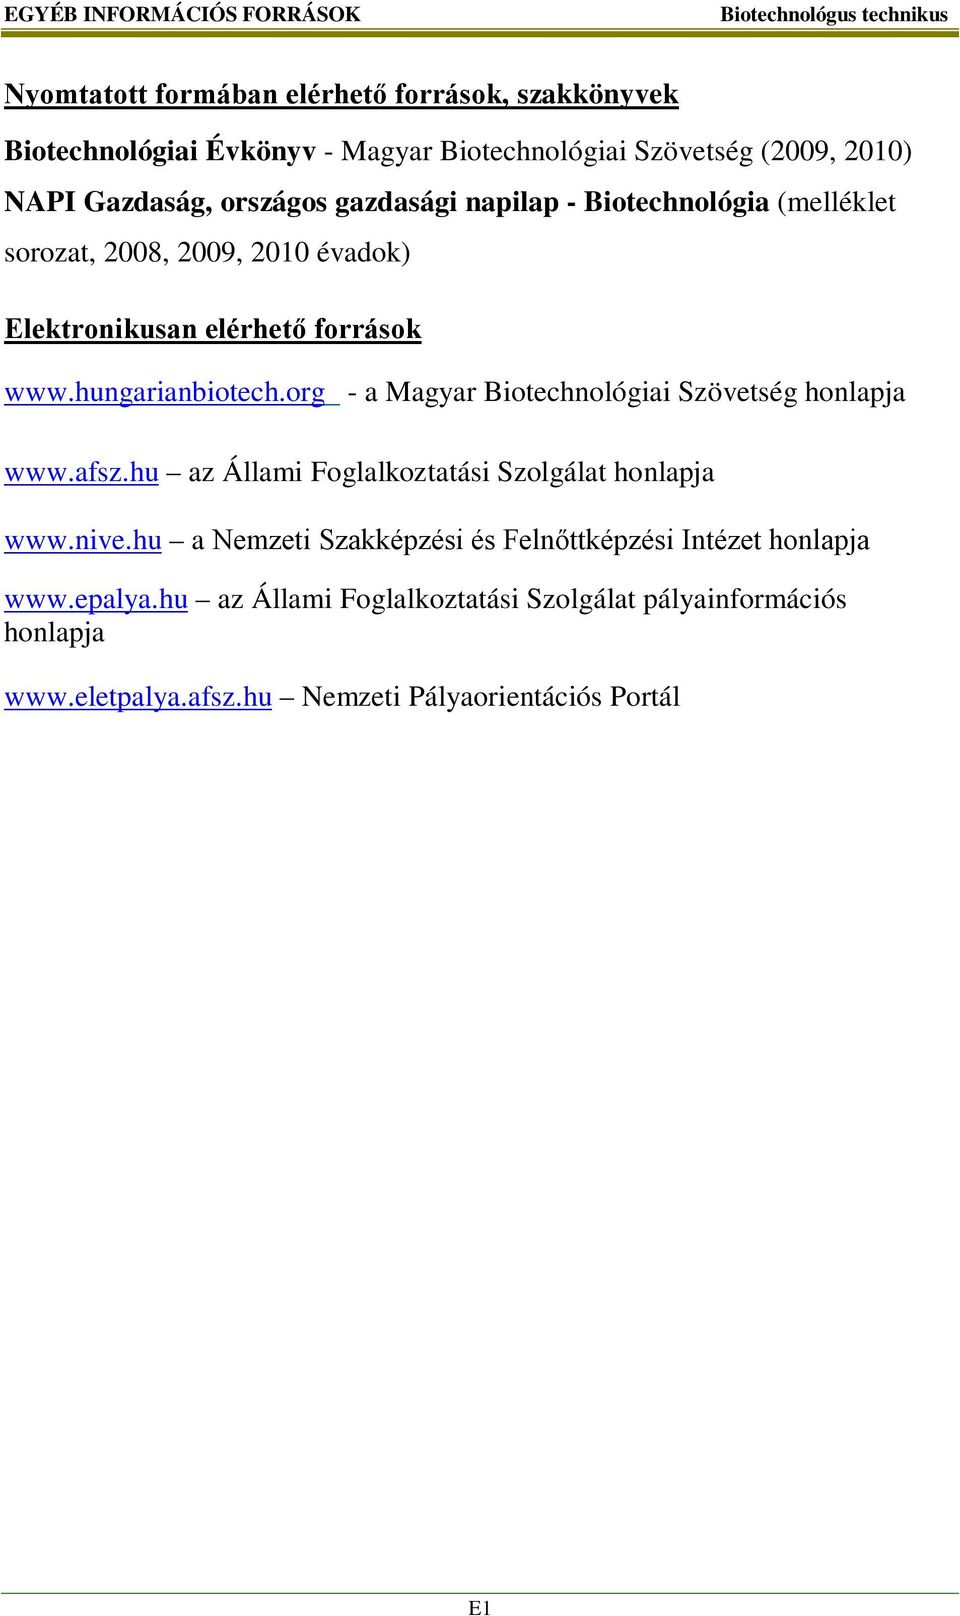 hungarianbiotech.org - a Magyar Biotechnológiai Szövetség honlapja www.afsz.hu az Állami Foglalkoztatási Szolgálat honlapja www.nive.